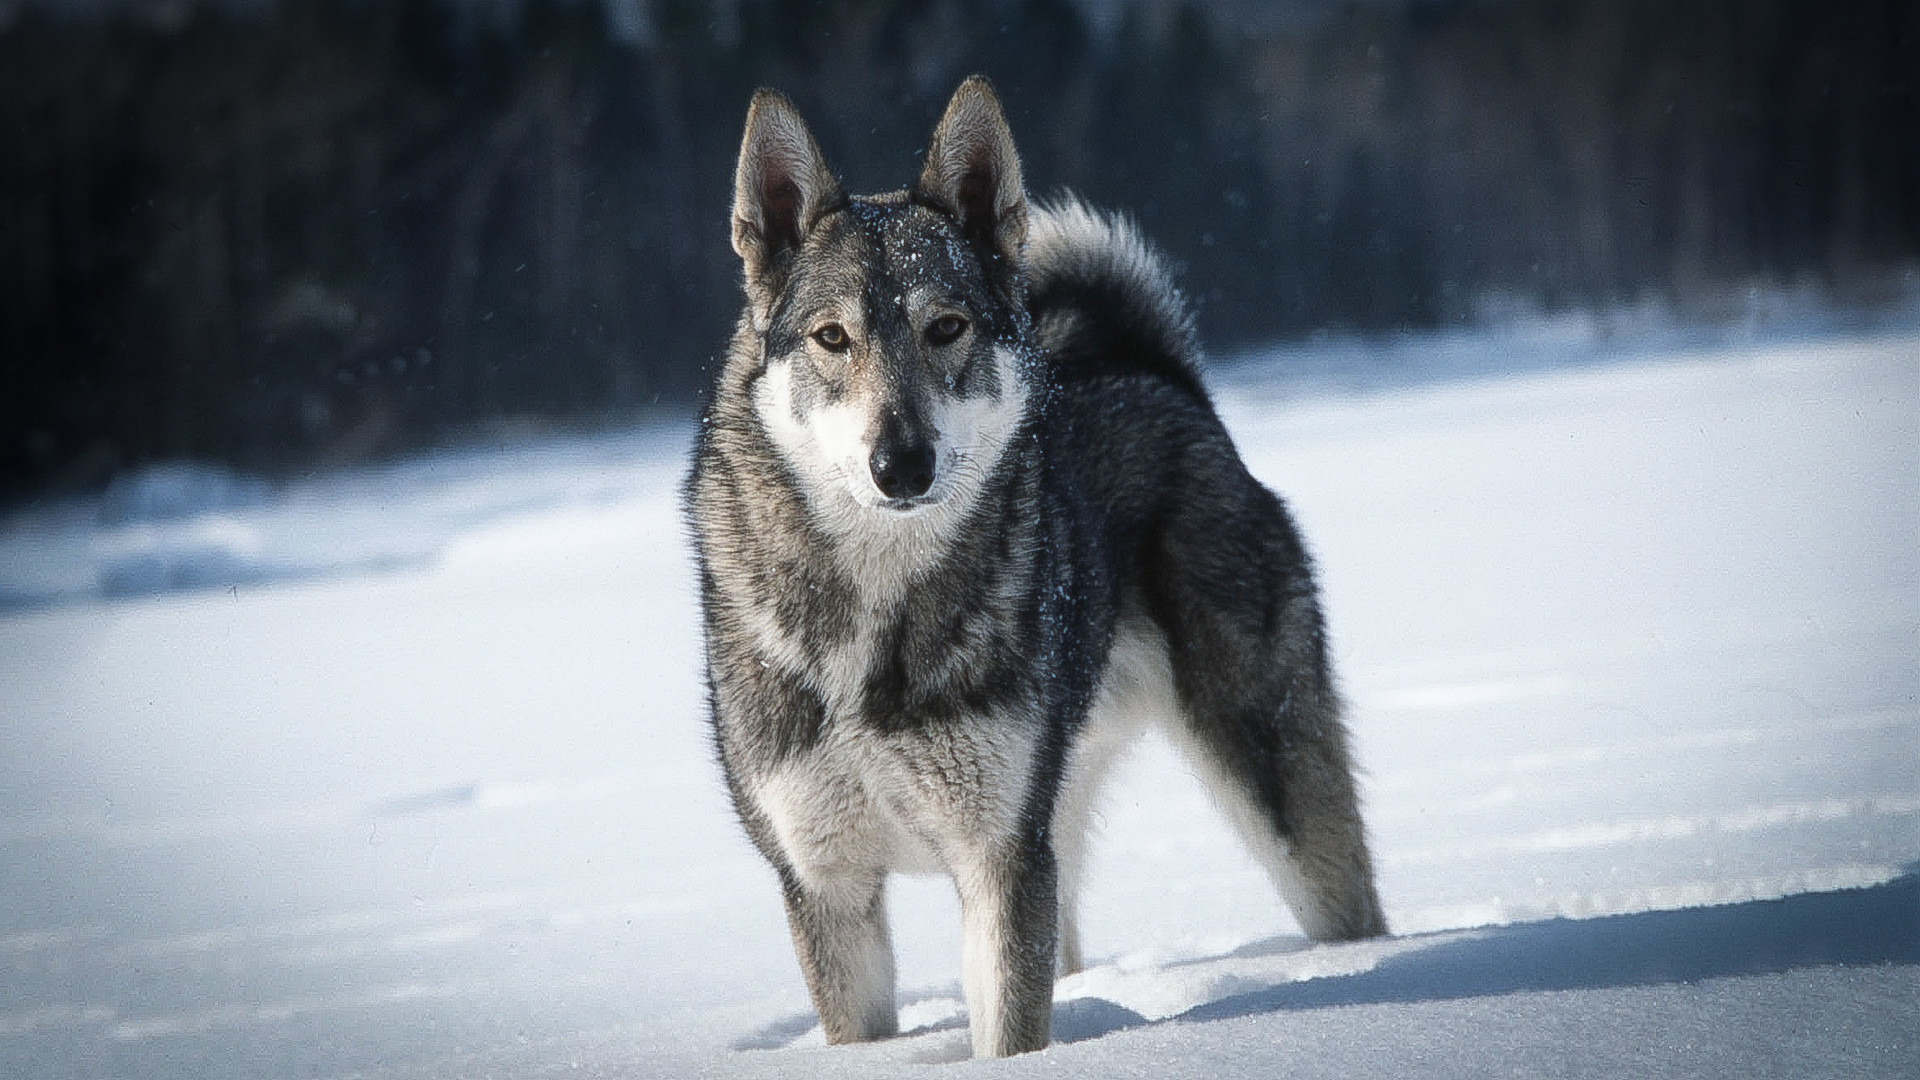 Алтајски крај. Квалитетна лајка је у лову важнија од оружја, сматрају професионални ловци. Лајка је најбољи пас за сибирске климатске услове. На фотографији: лајка по имену Бич.